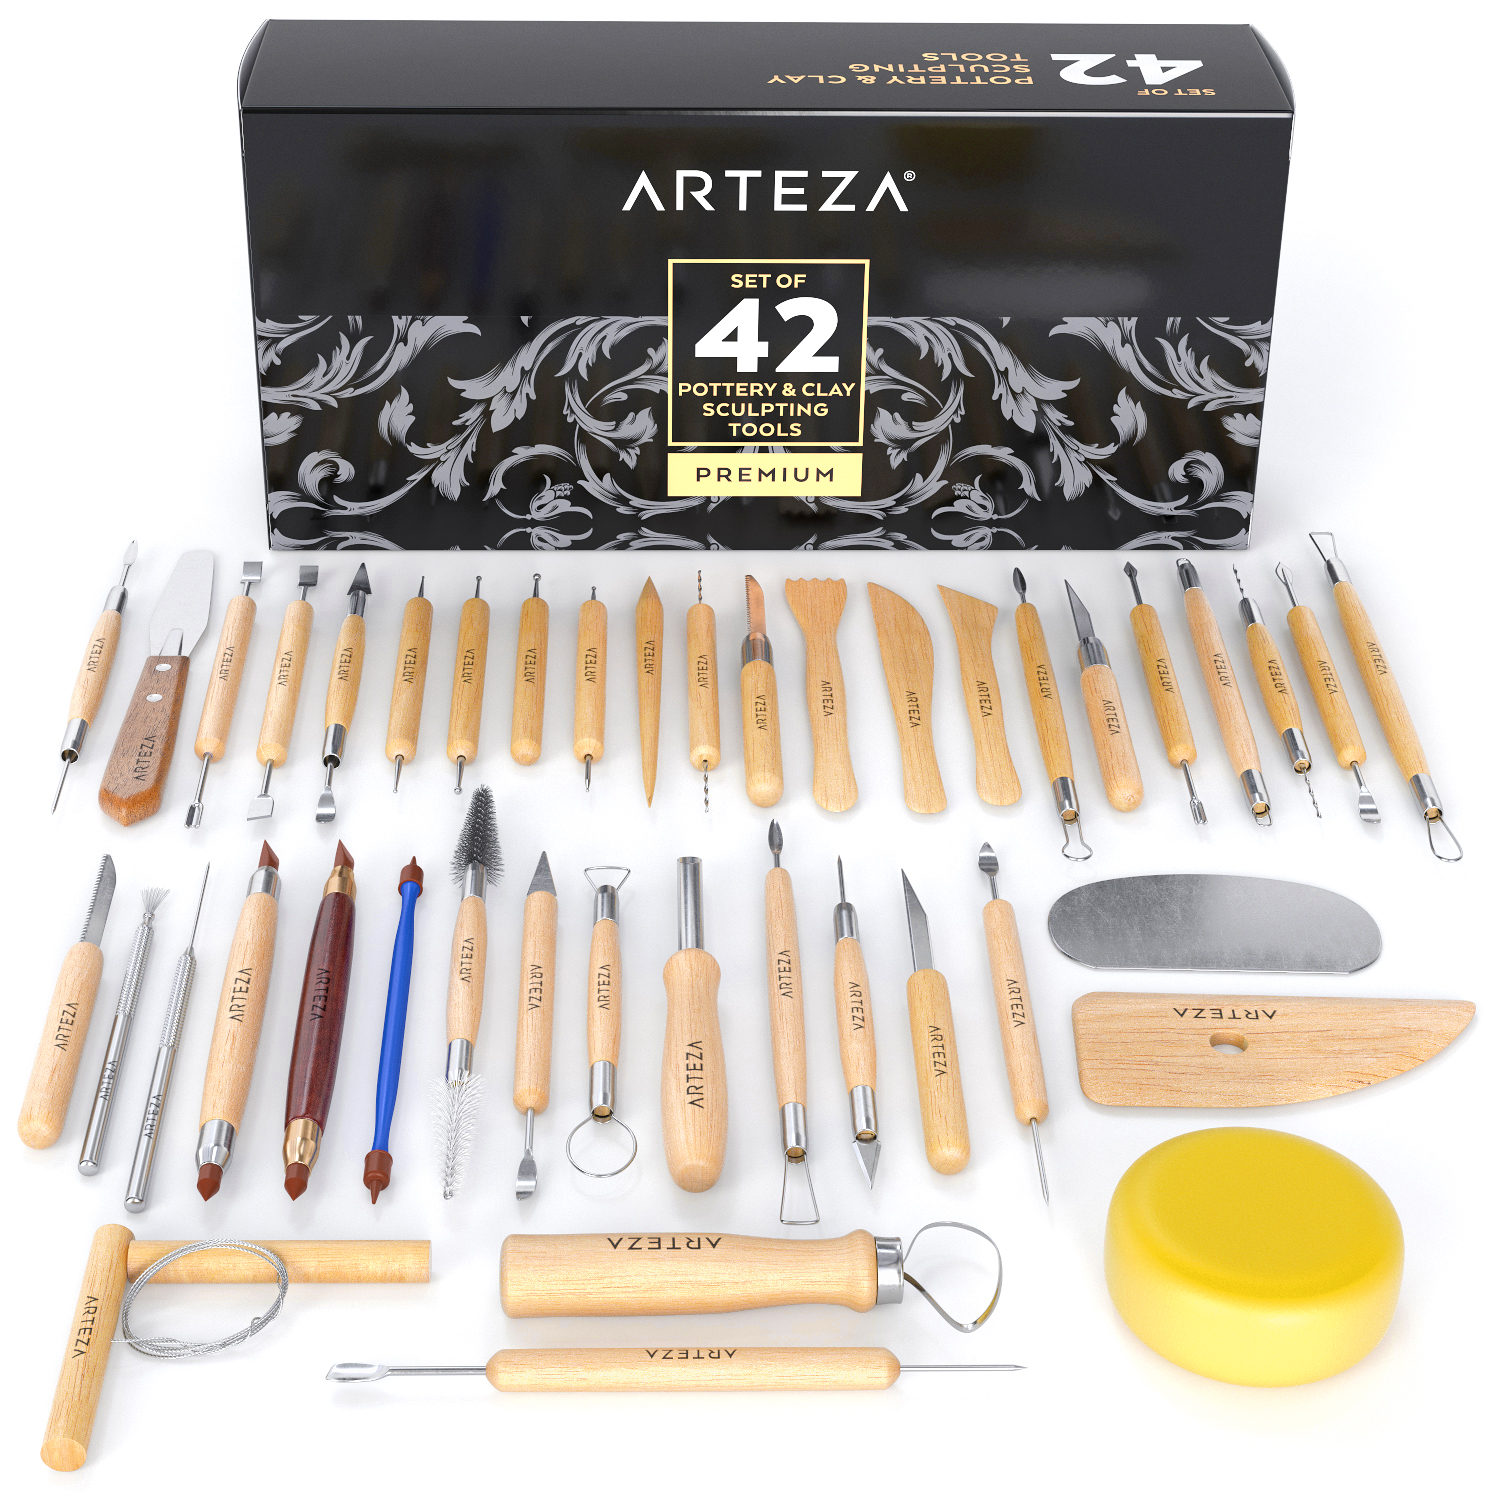 Arteza Set of 42 Pottery Tools for Sculpting